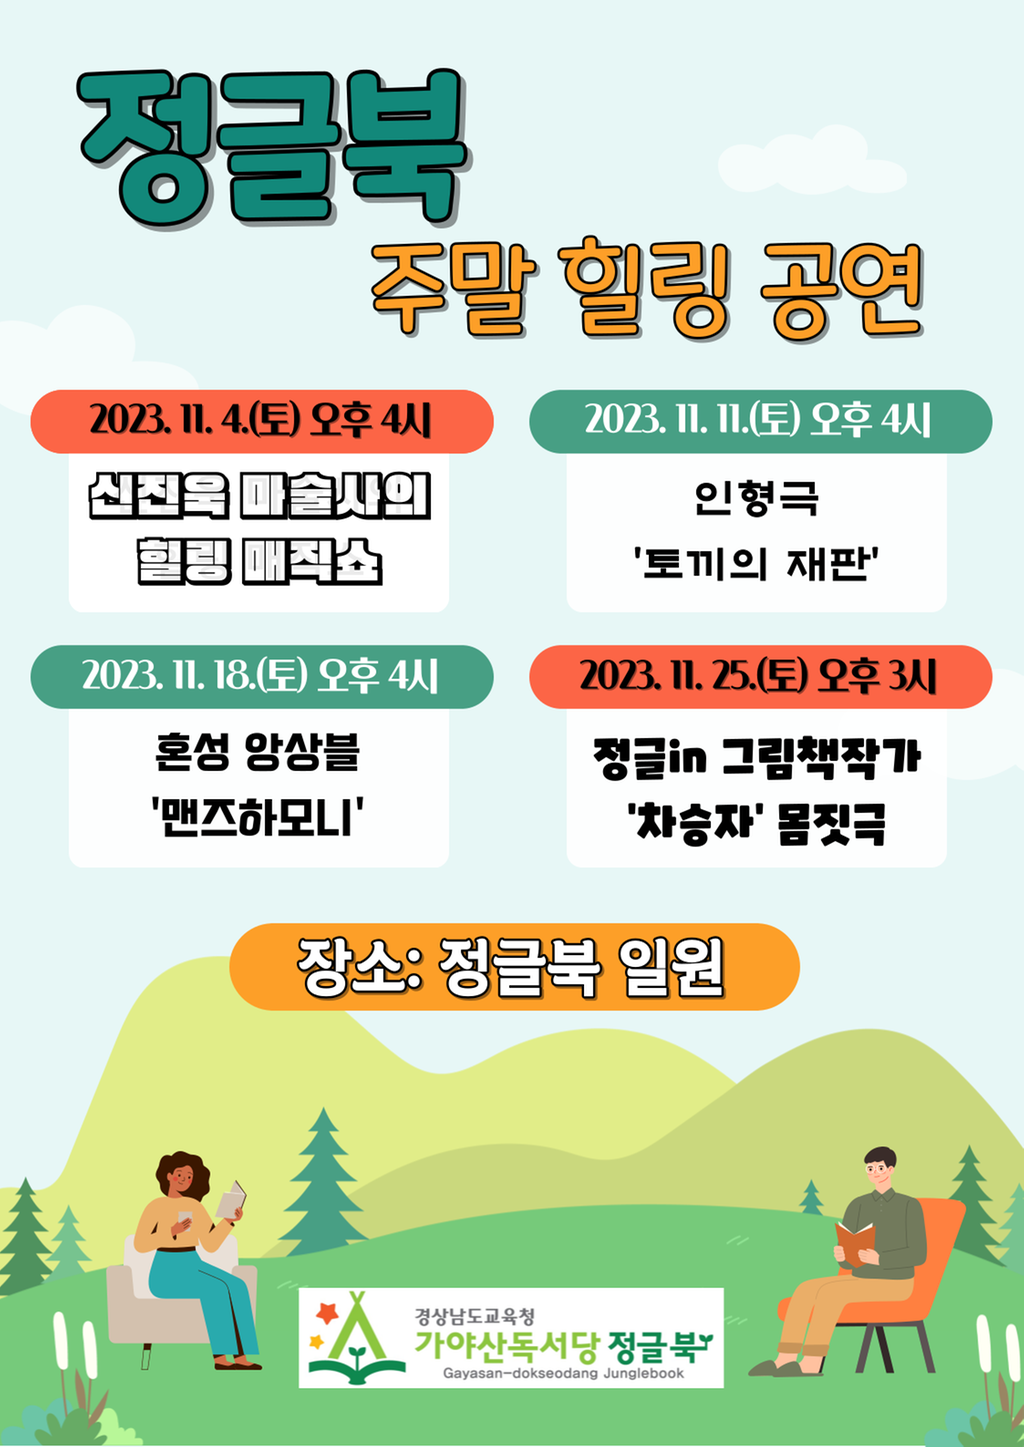 11월 북캠프 문화행사 안내